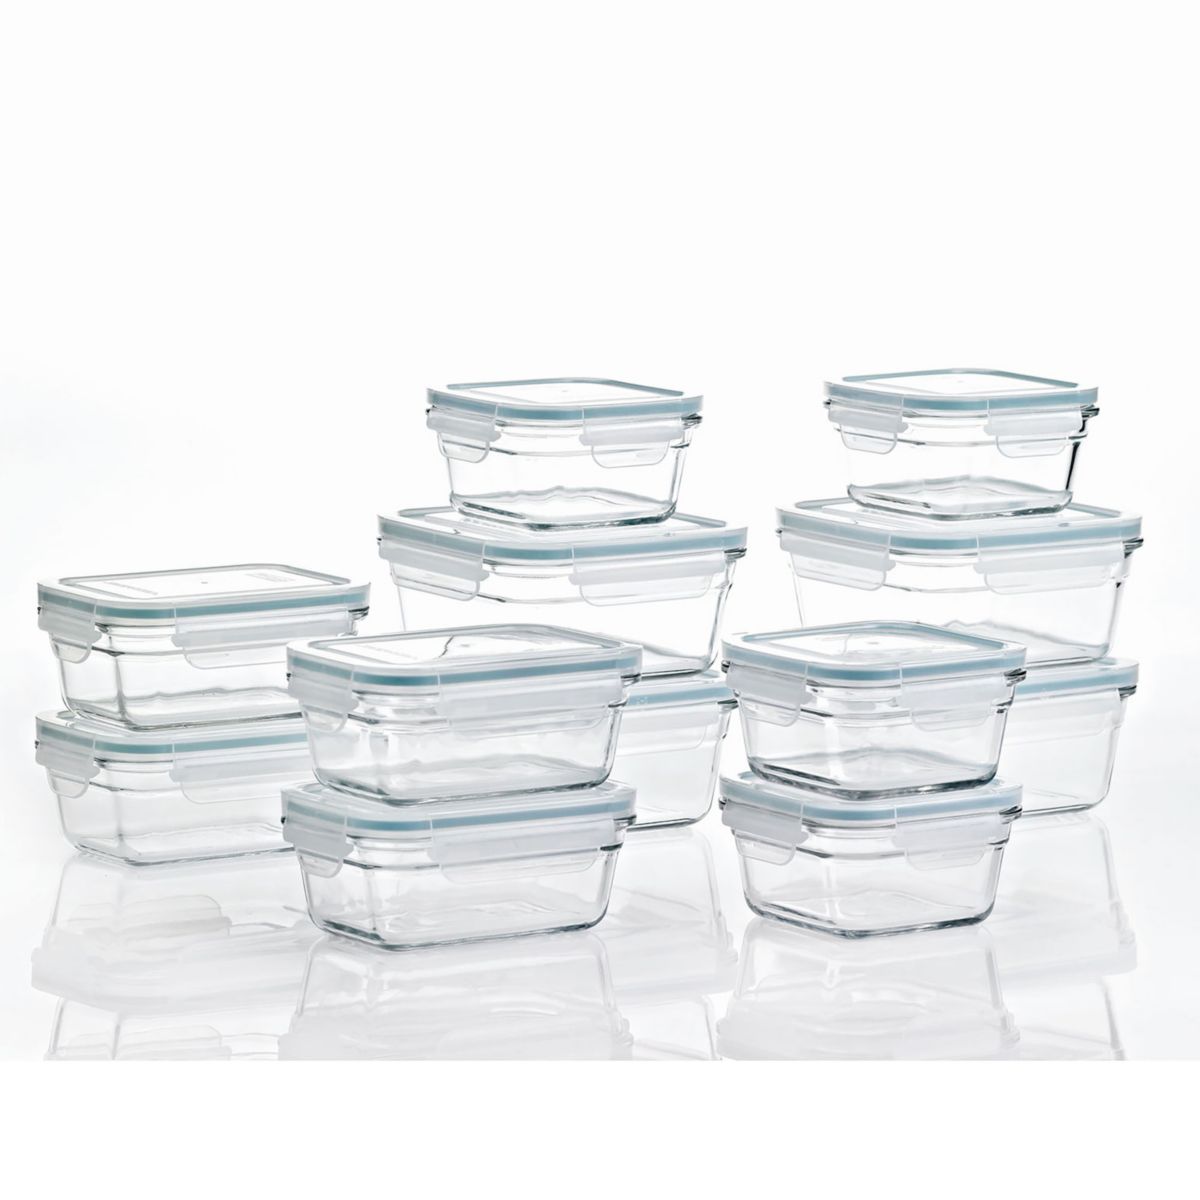 Набор стеклянных контейнеров для хранения пищевых продуктов Glasslock, 24 предмета, безопасных для микроволновой печи, с крышками Glasslock